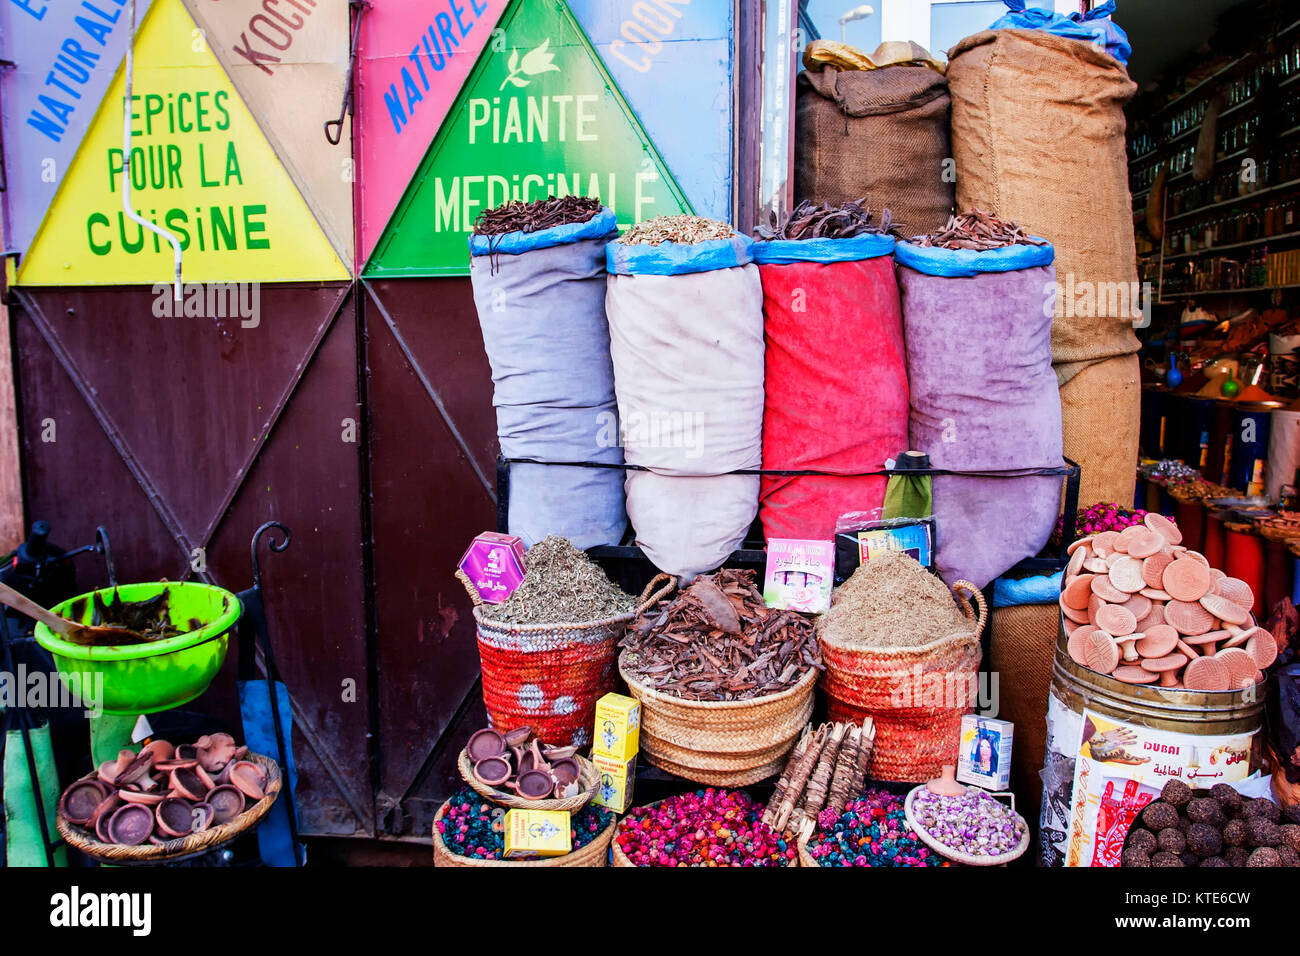 Les épices dans un souk à Marrakech, Maroc Banque D'Images